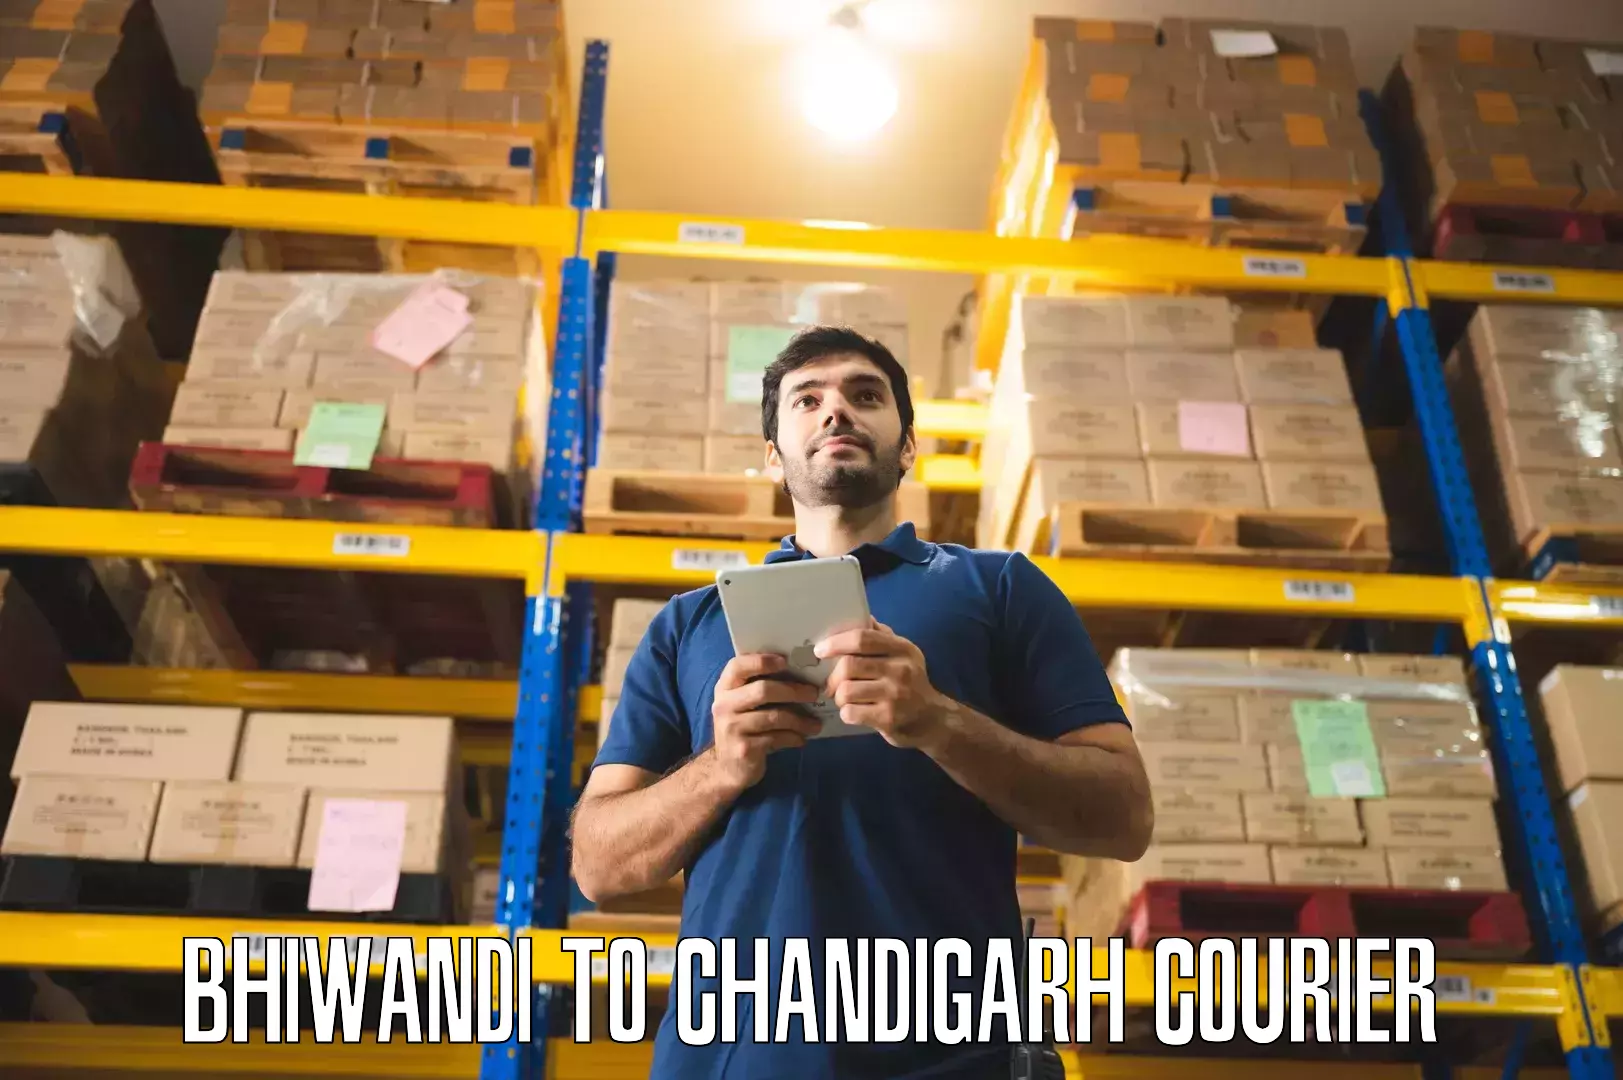 Furniture transport experts Bhiwandi to Chandigarh